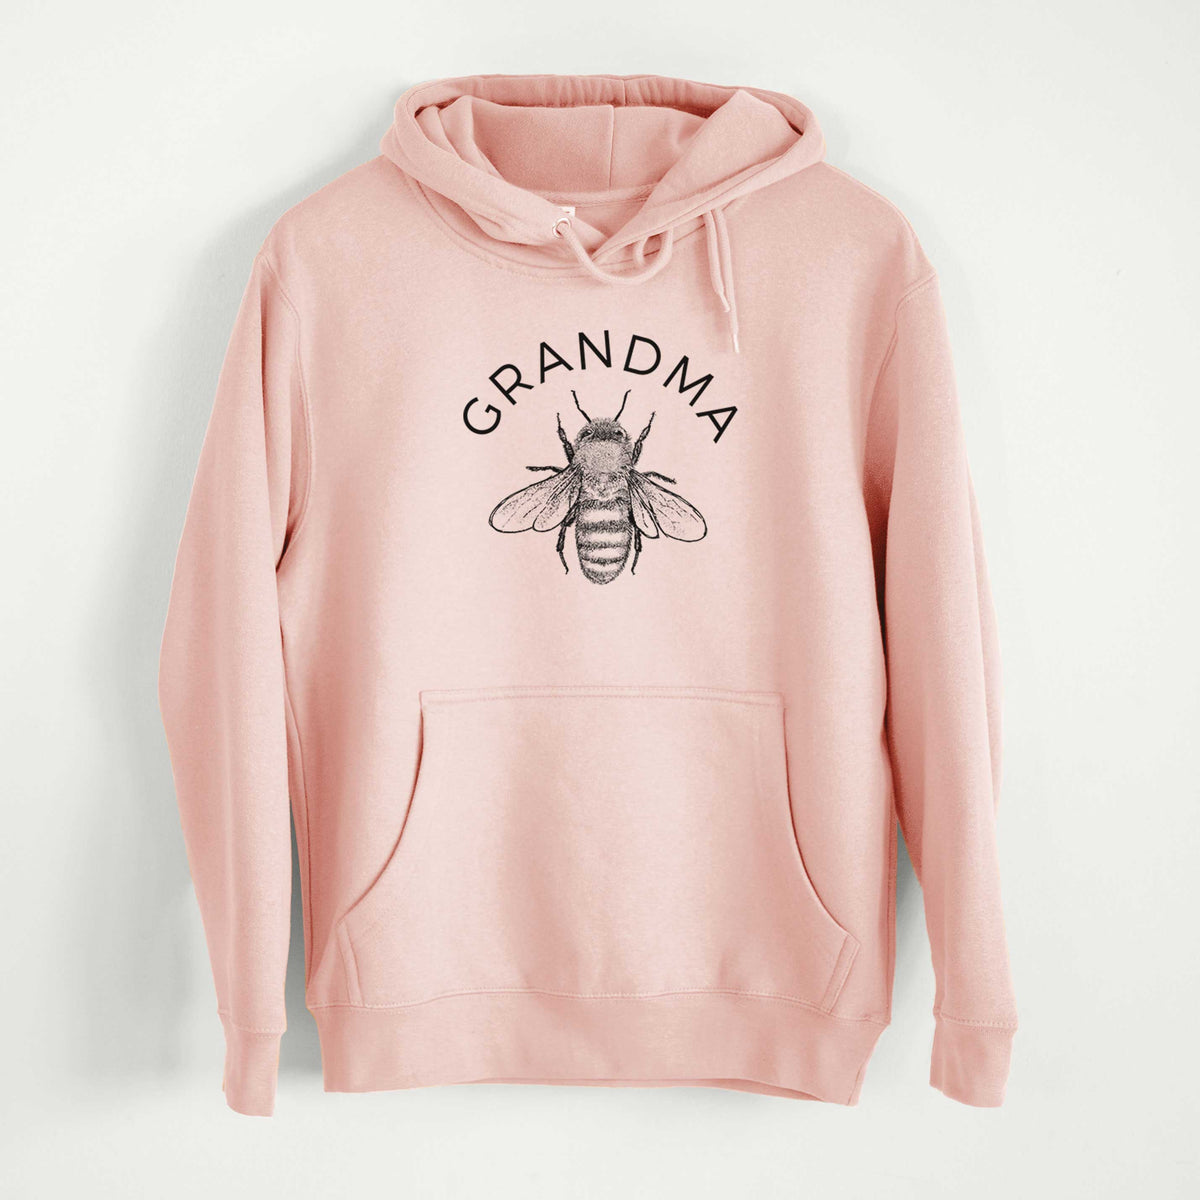 Grandma Bee  - Mid-Weight Unisex Premium Blend Hoodie